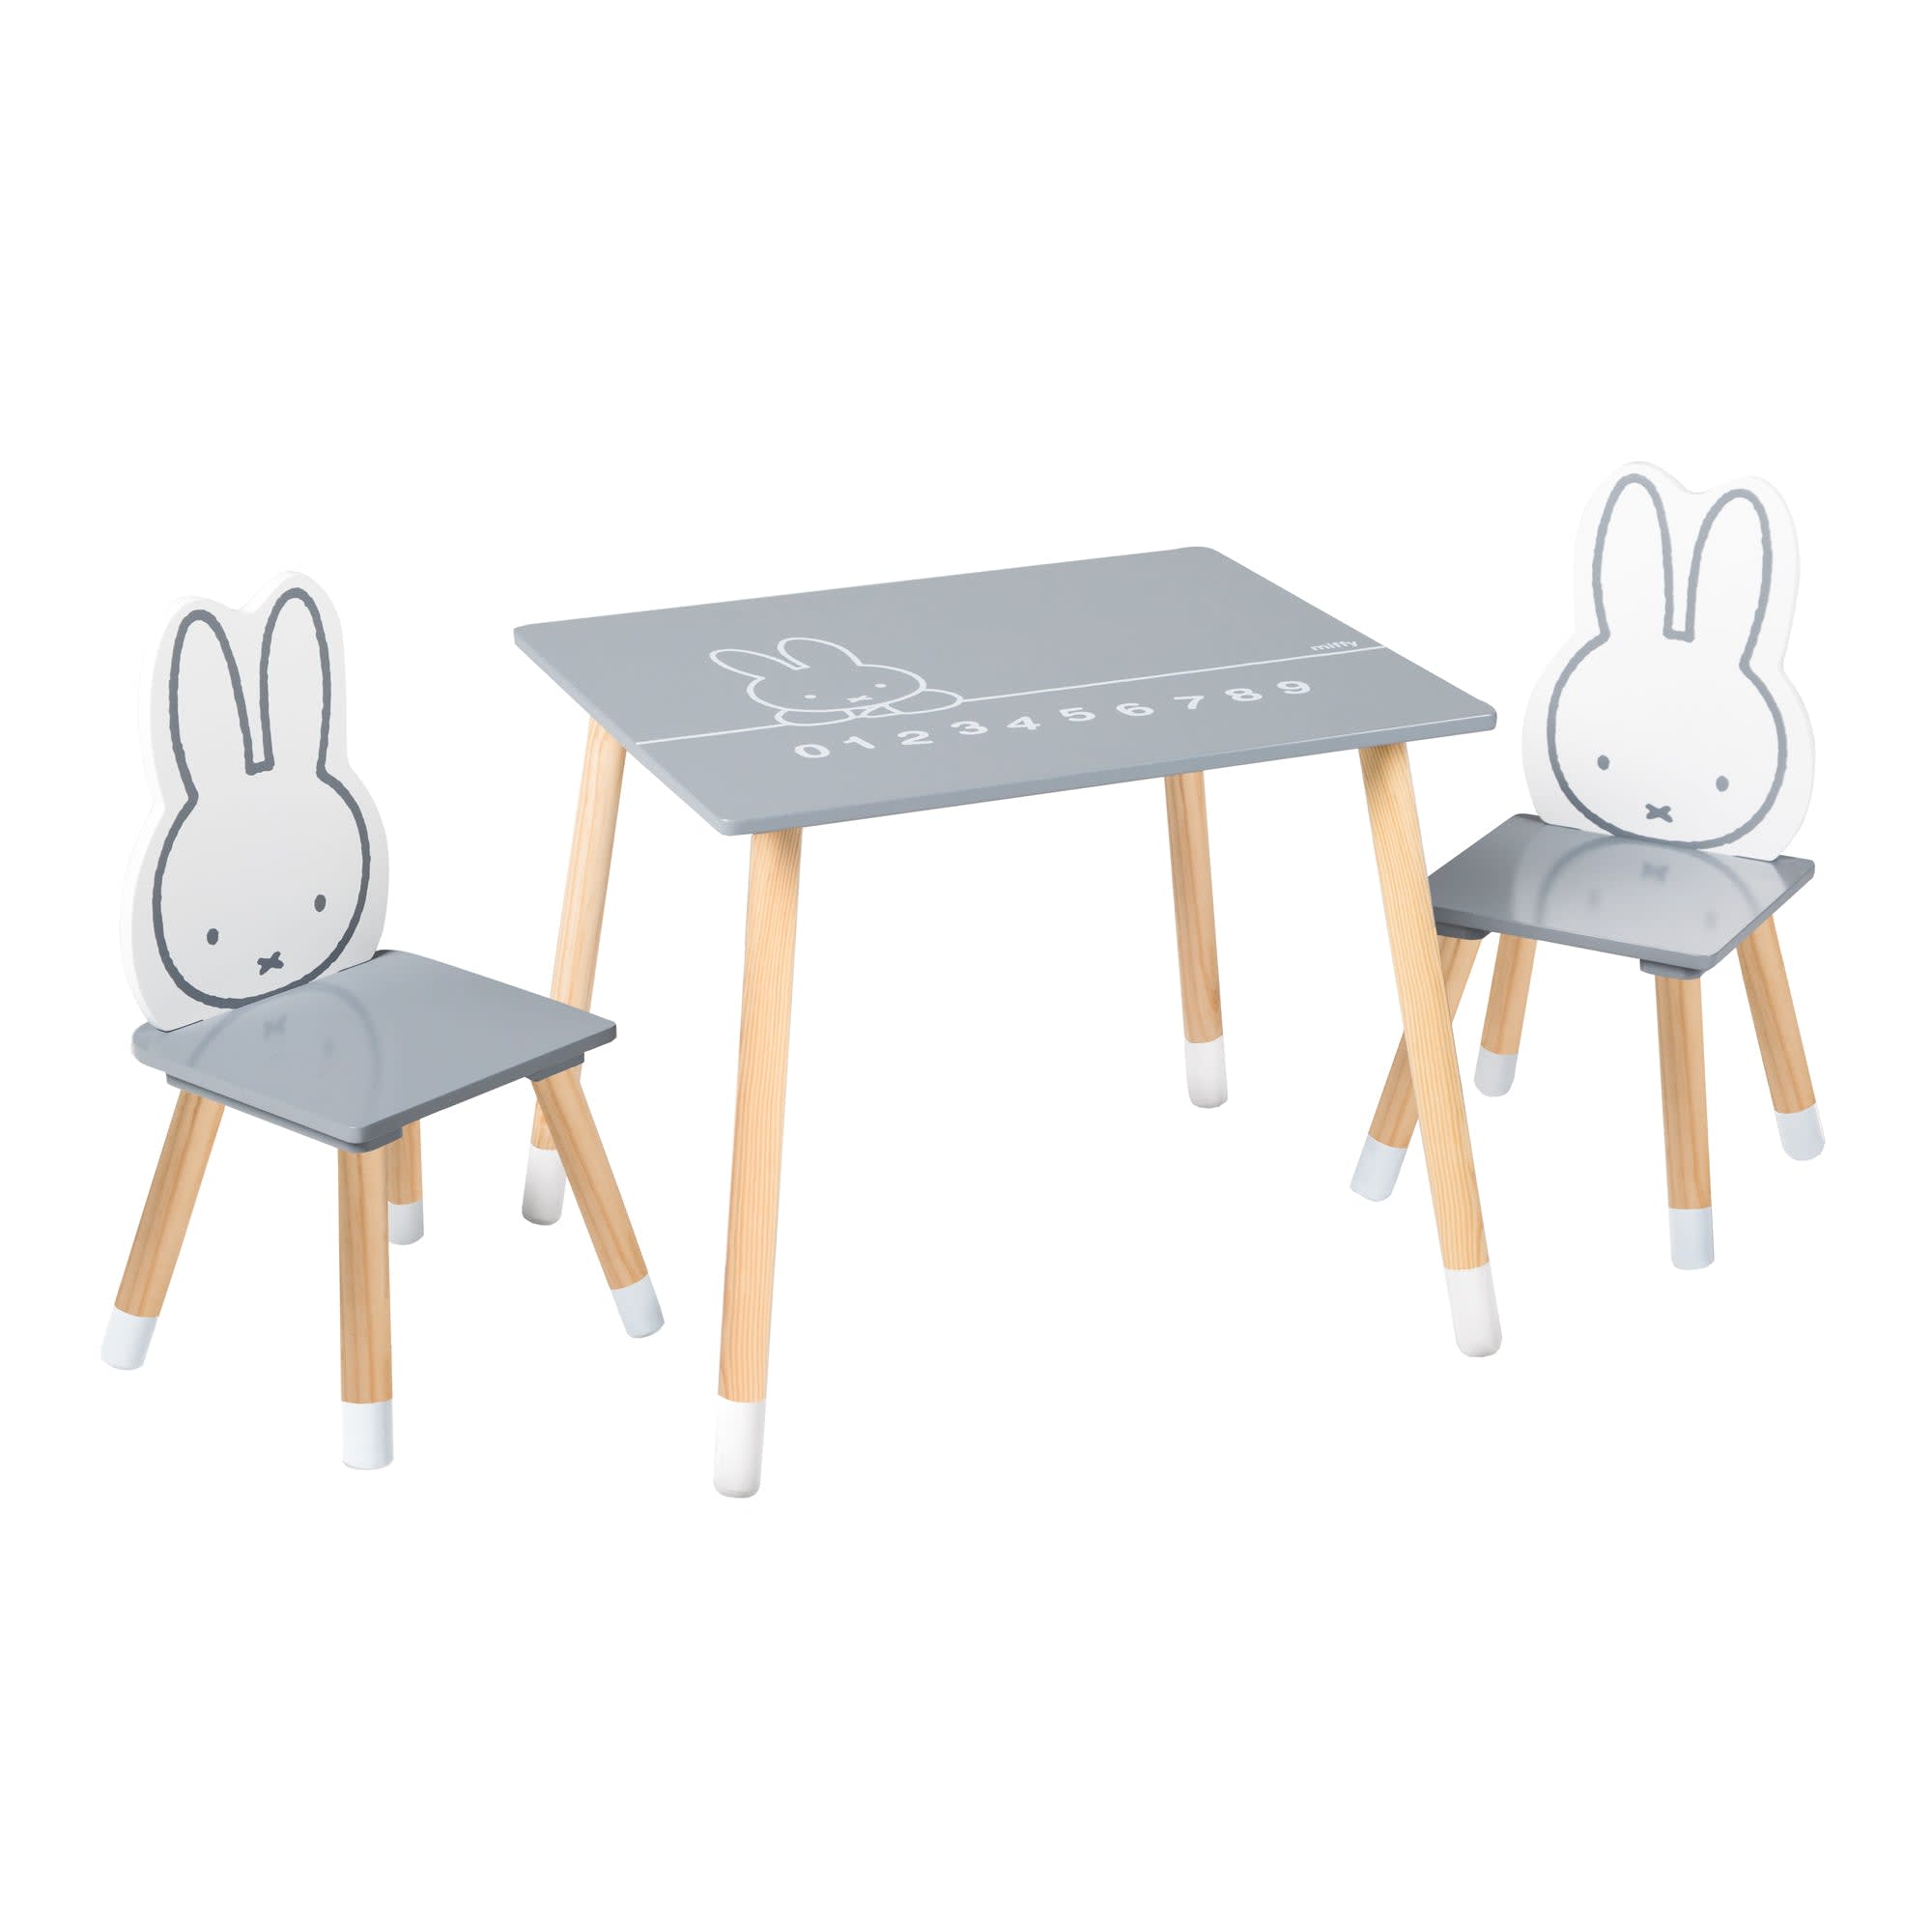 Kindersitzgruppe, 2 Stühle und 1 Tisch, weiß/grau MIFFY | Maisons du Monde